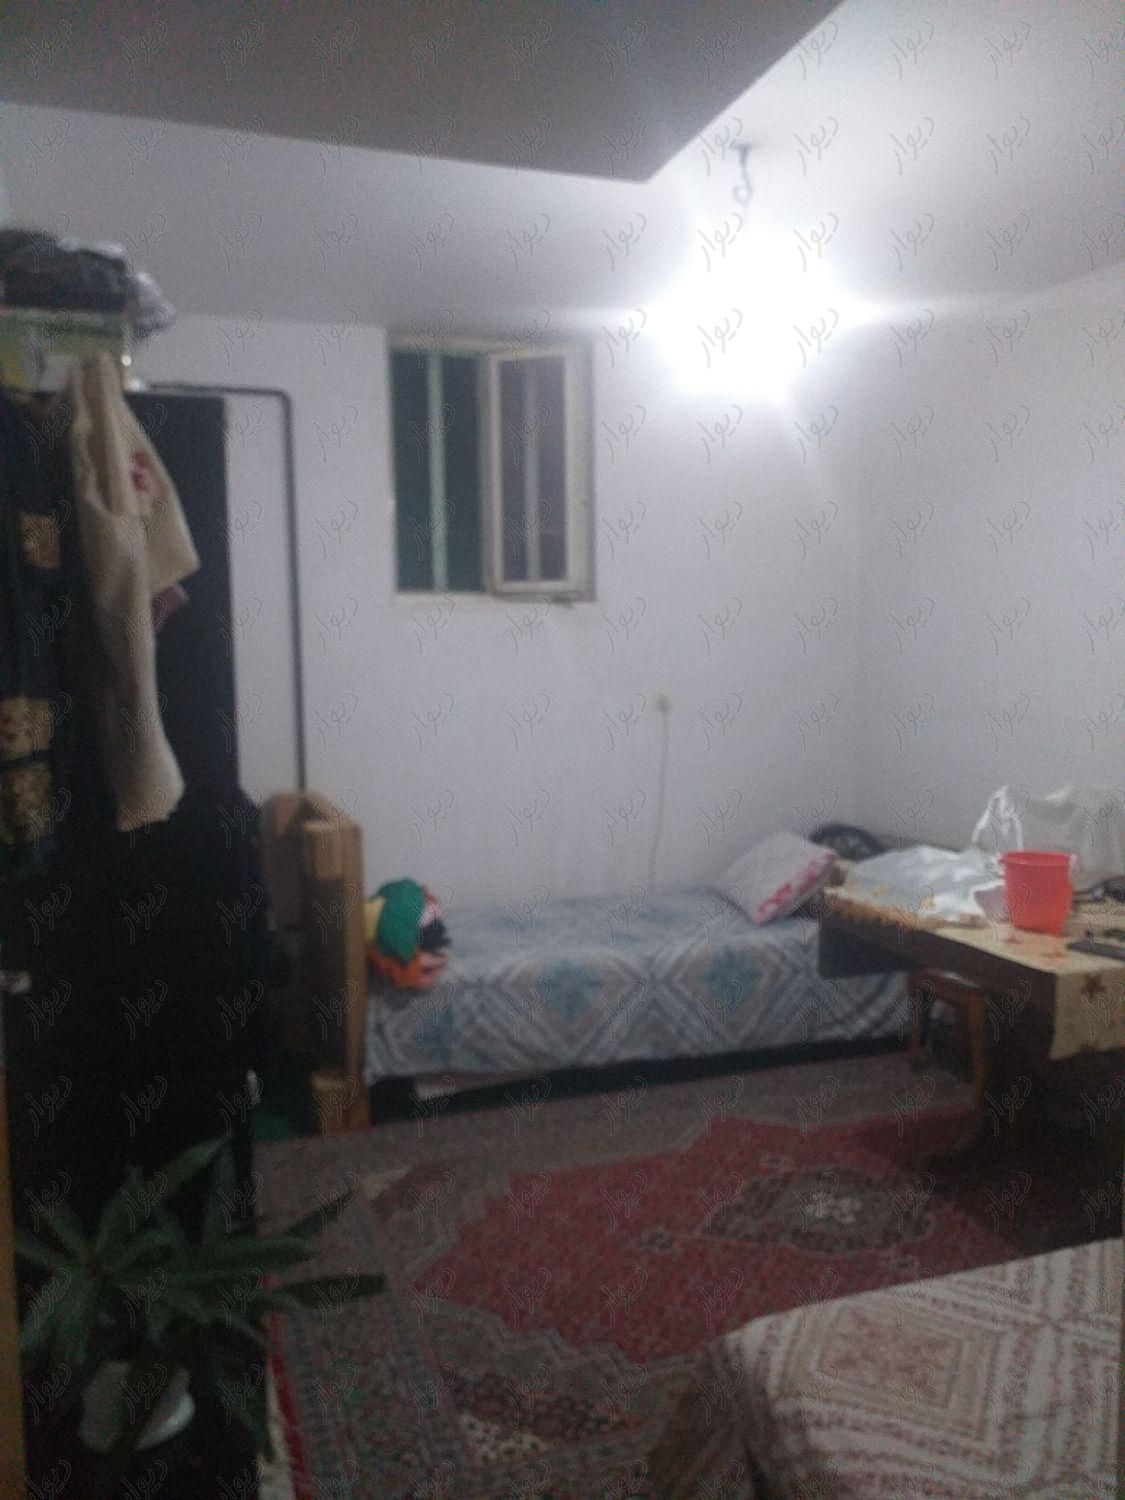 منزل دوخواب ۹۰ متری یک طبقه نصراباد|فروش آپارتمان|شیراز, نصرآباد|دیوار